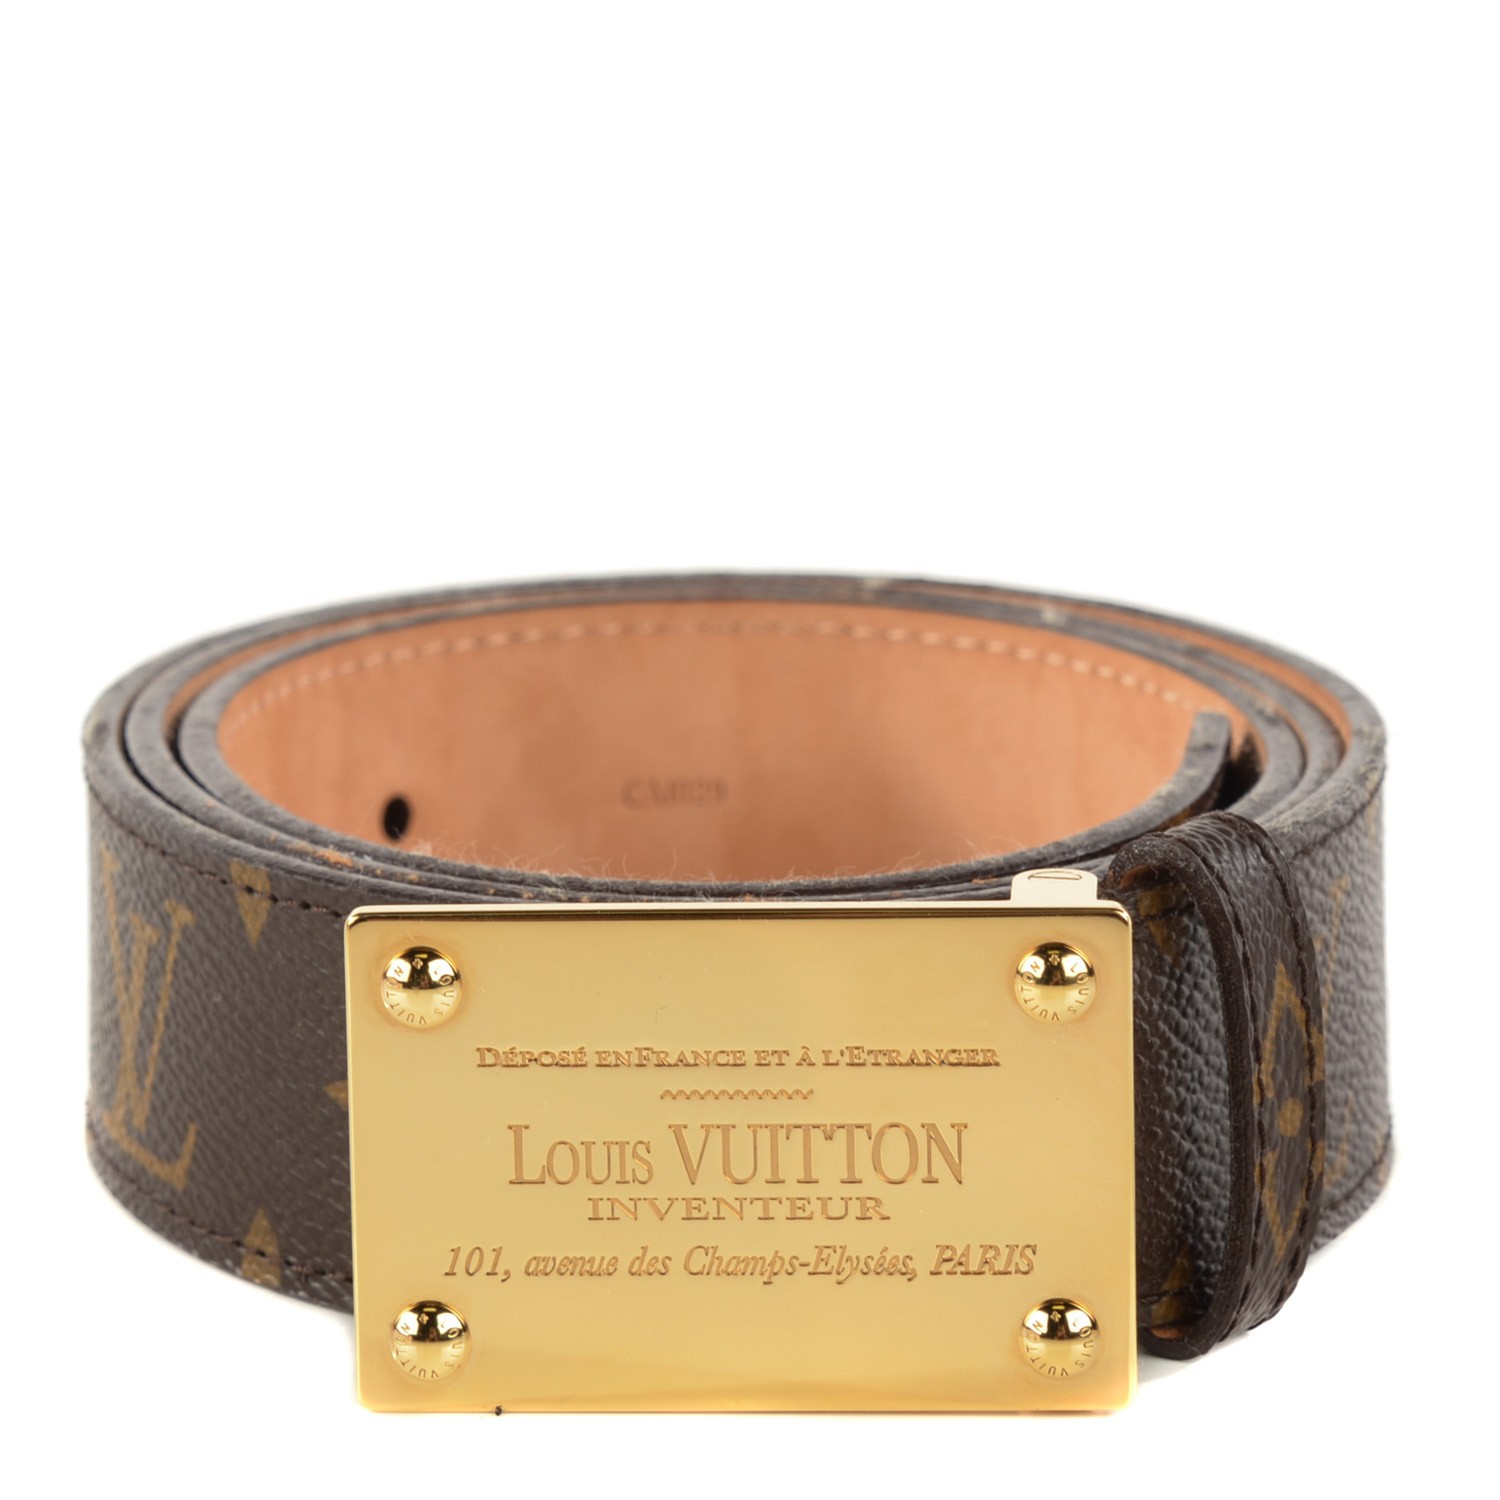 LOUIS VUITTON Monogram 40mm Inventeur Belt 95 38 122870